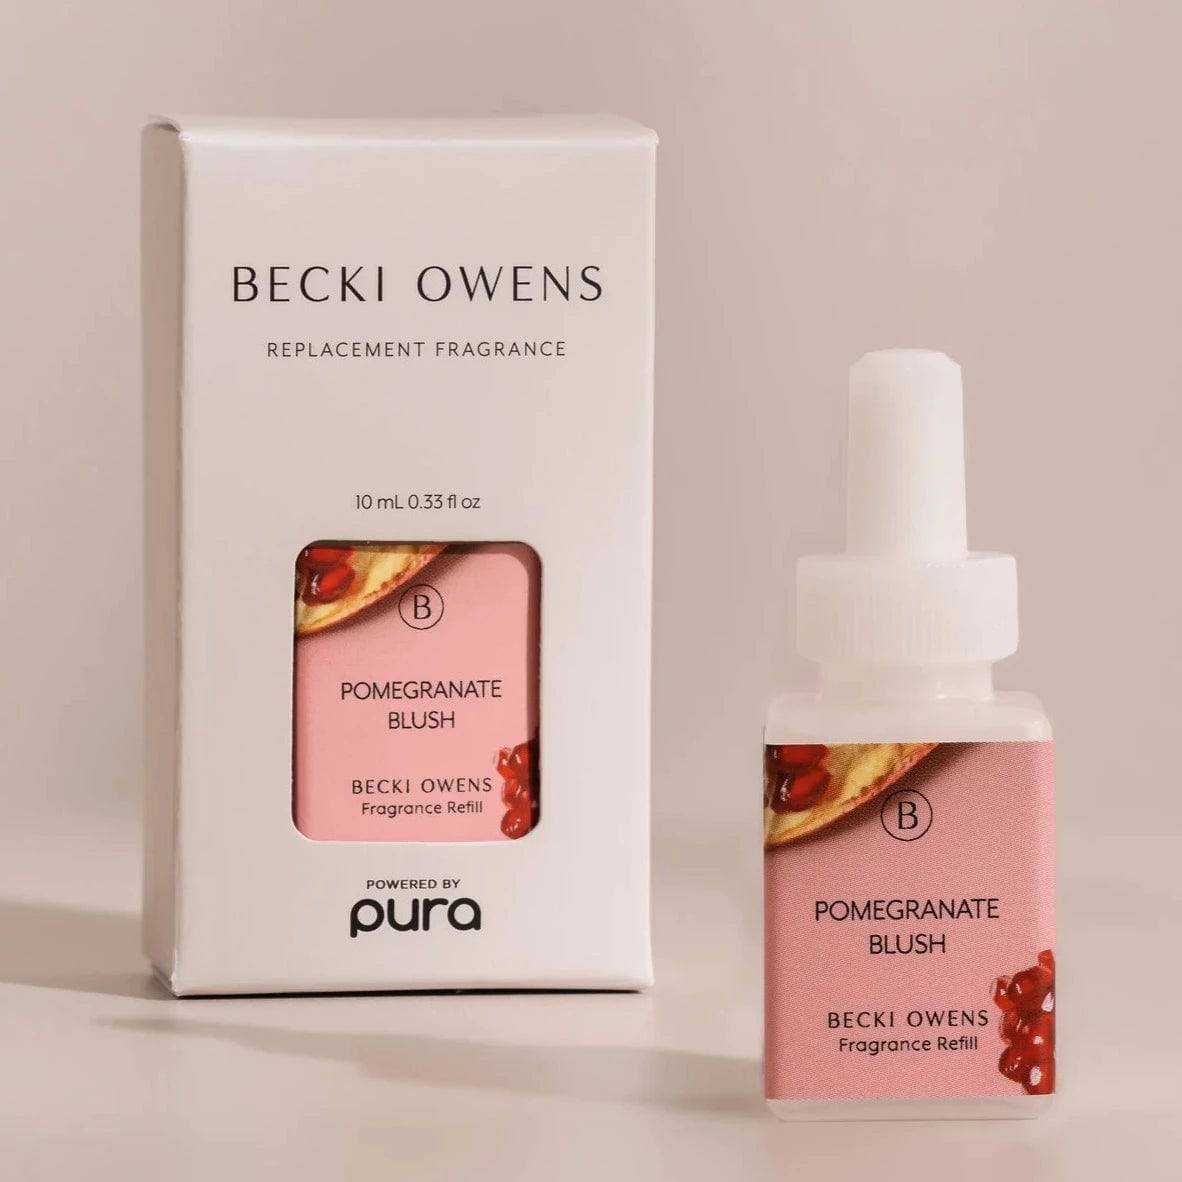 Pomegranate Blush Pura Fragrance Refill by Becki Owens - The Preppy Bunny